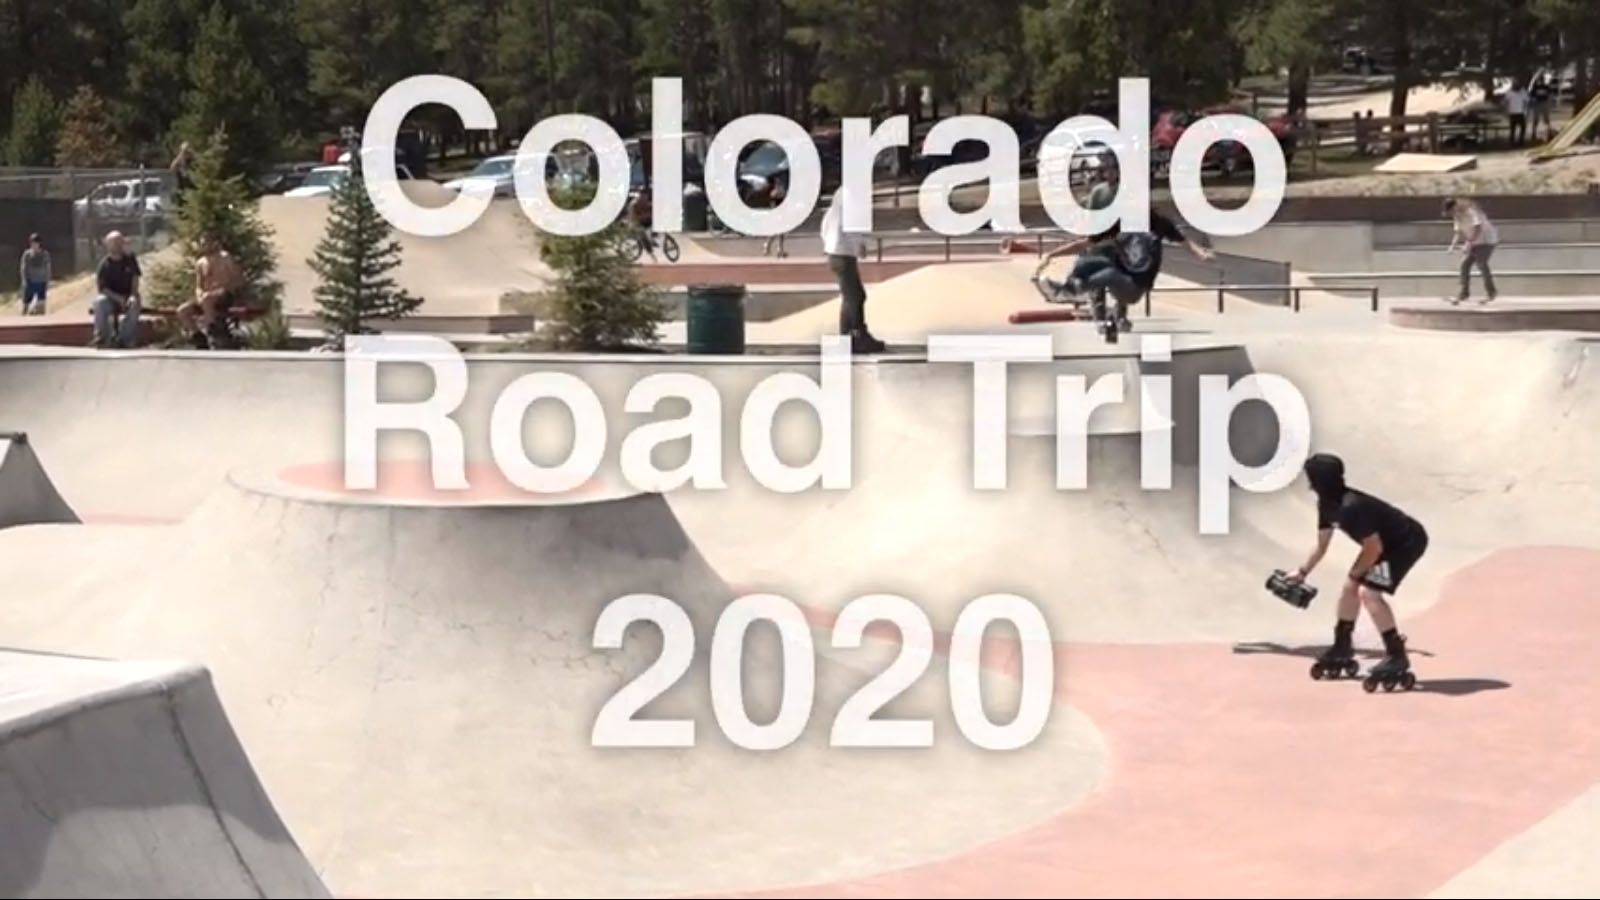 INTUITION SKATESHOP-COLORADO ROAD TRIP 2020